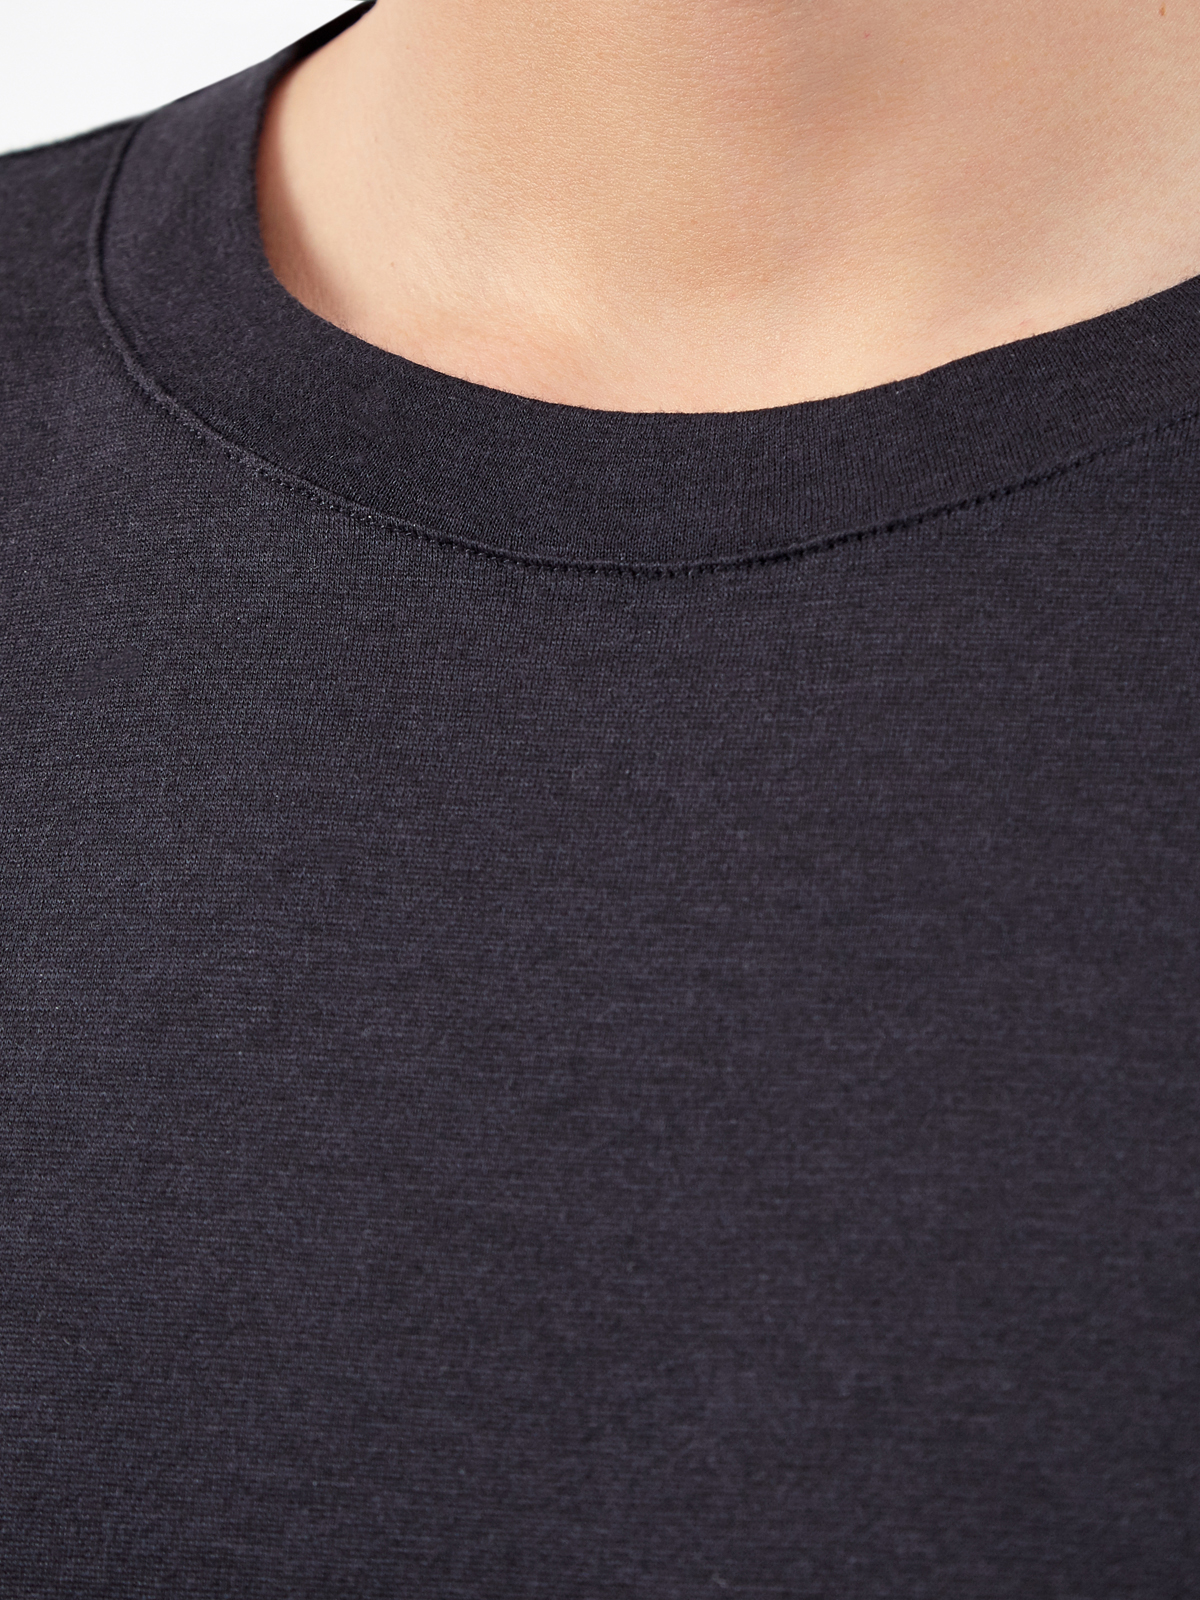 Базовая черная футболка из хлопка и шелка ELEVENTY, цвет синий, размер 48;52;54;50 - фото 3